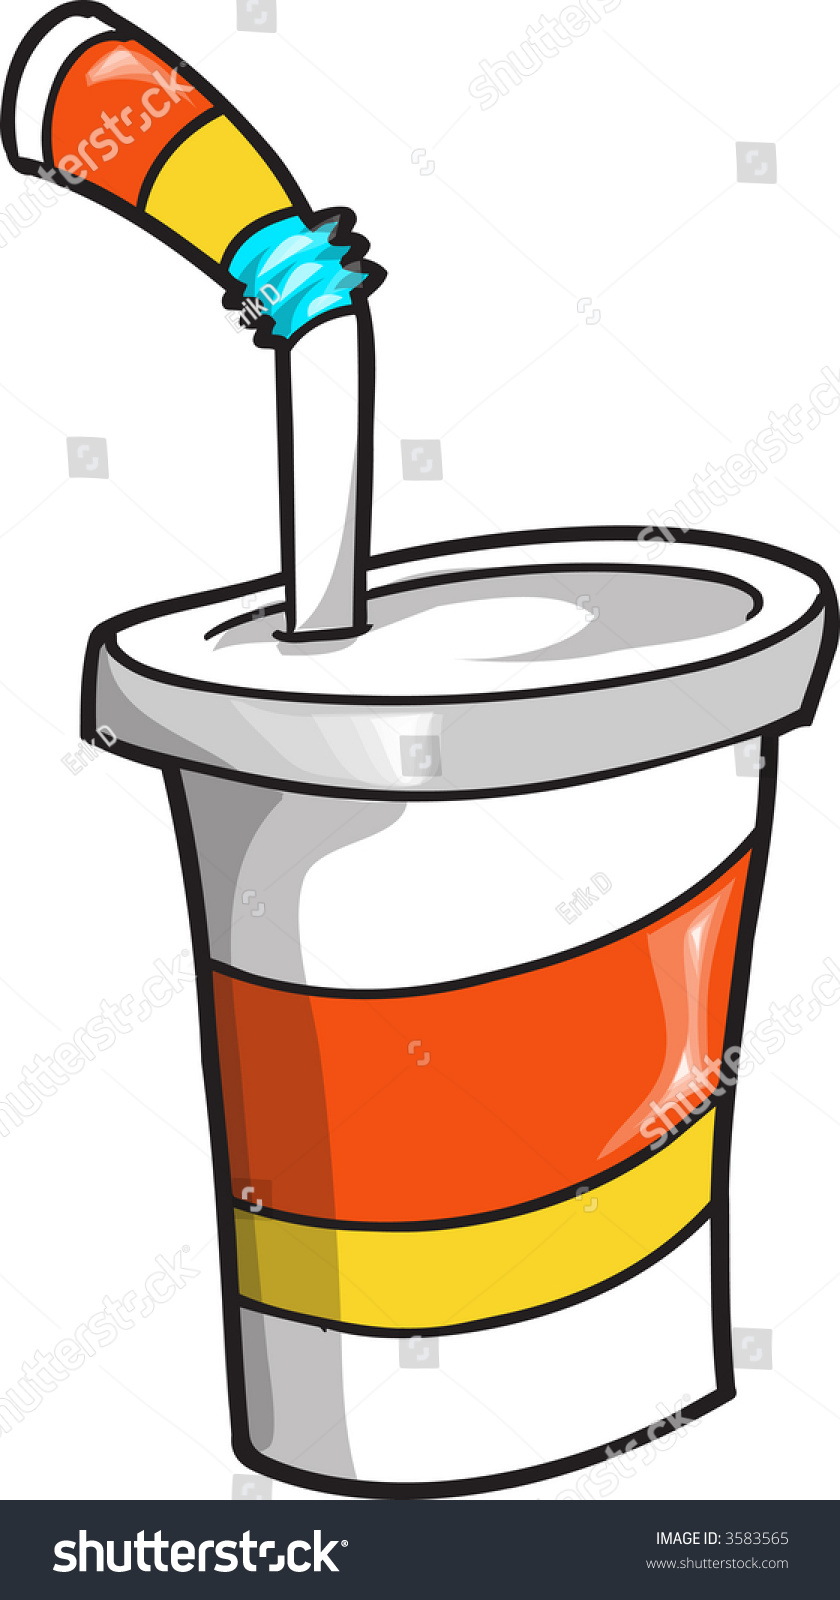 Soda Cup Vector Illustration - 3583565 : Shutterstock